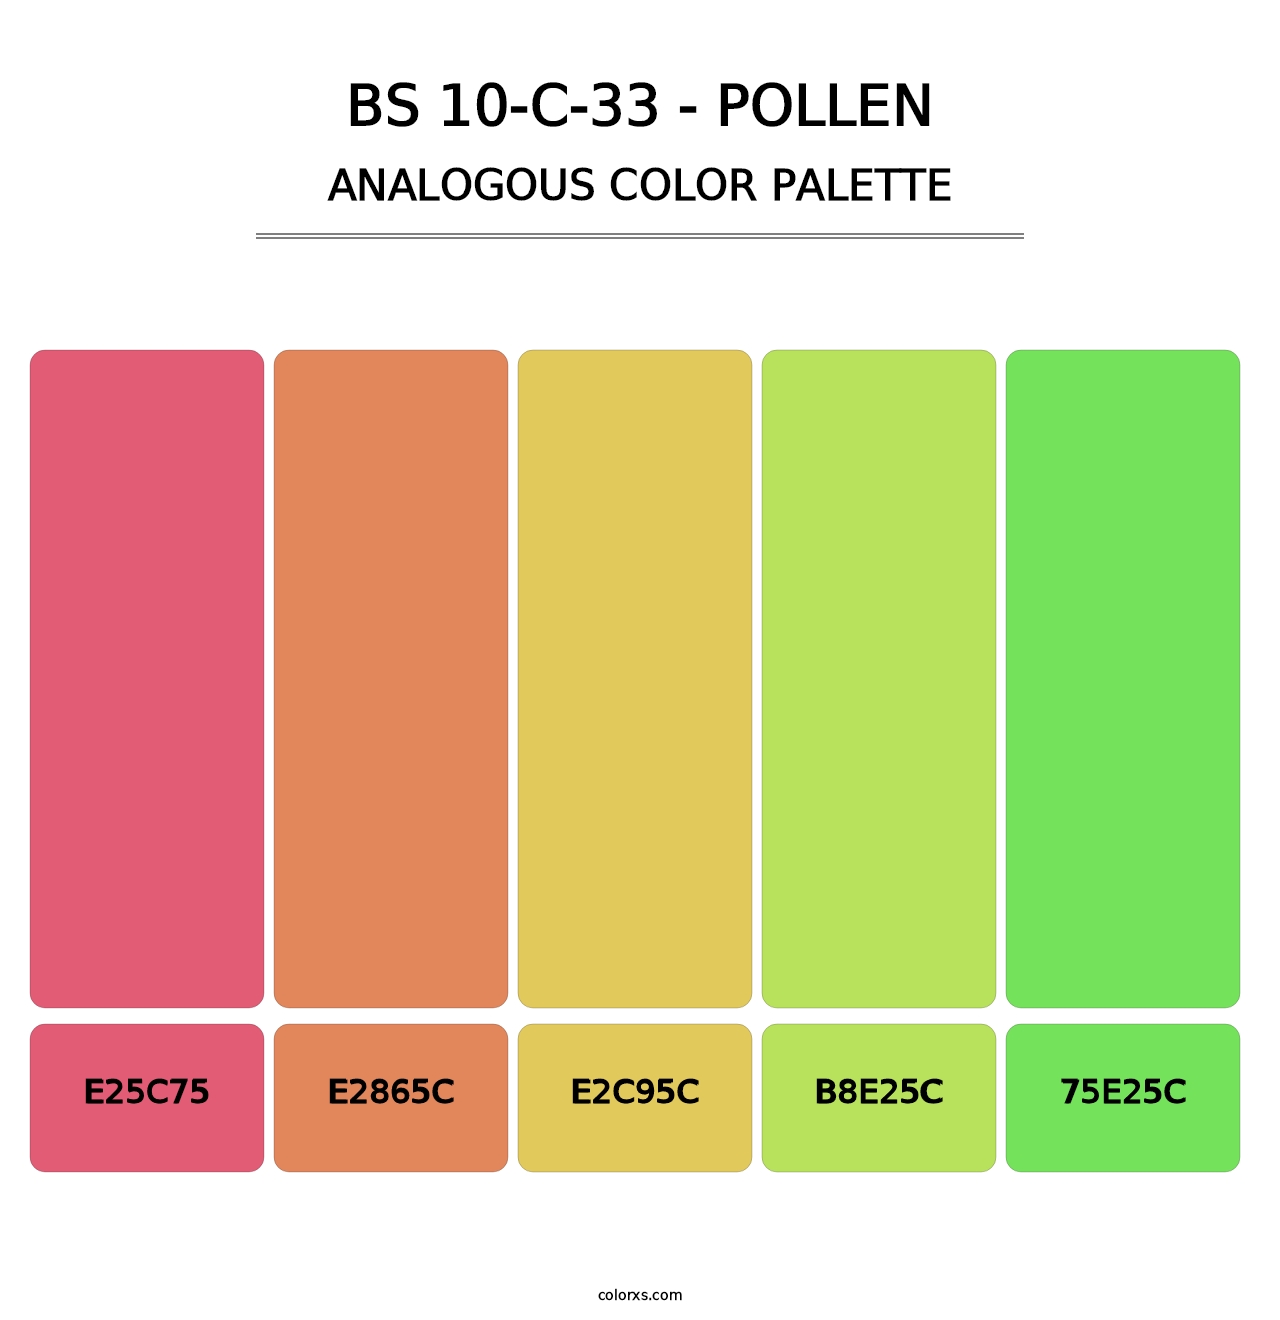 BS 10-C-33 - Pollen - Analogous Color Palette